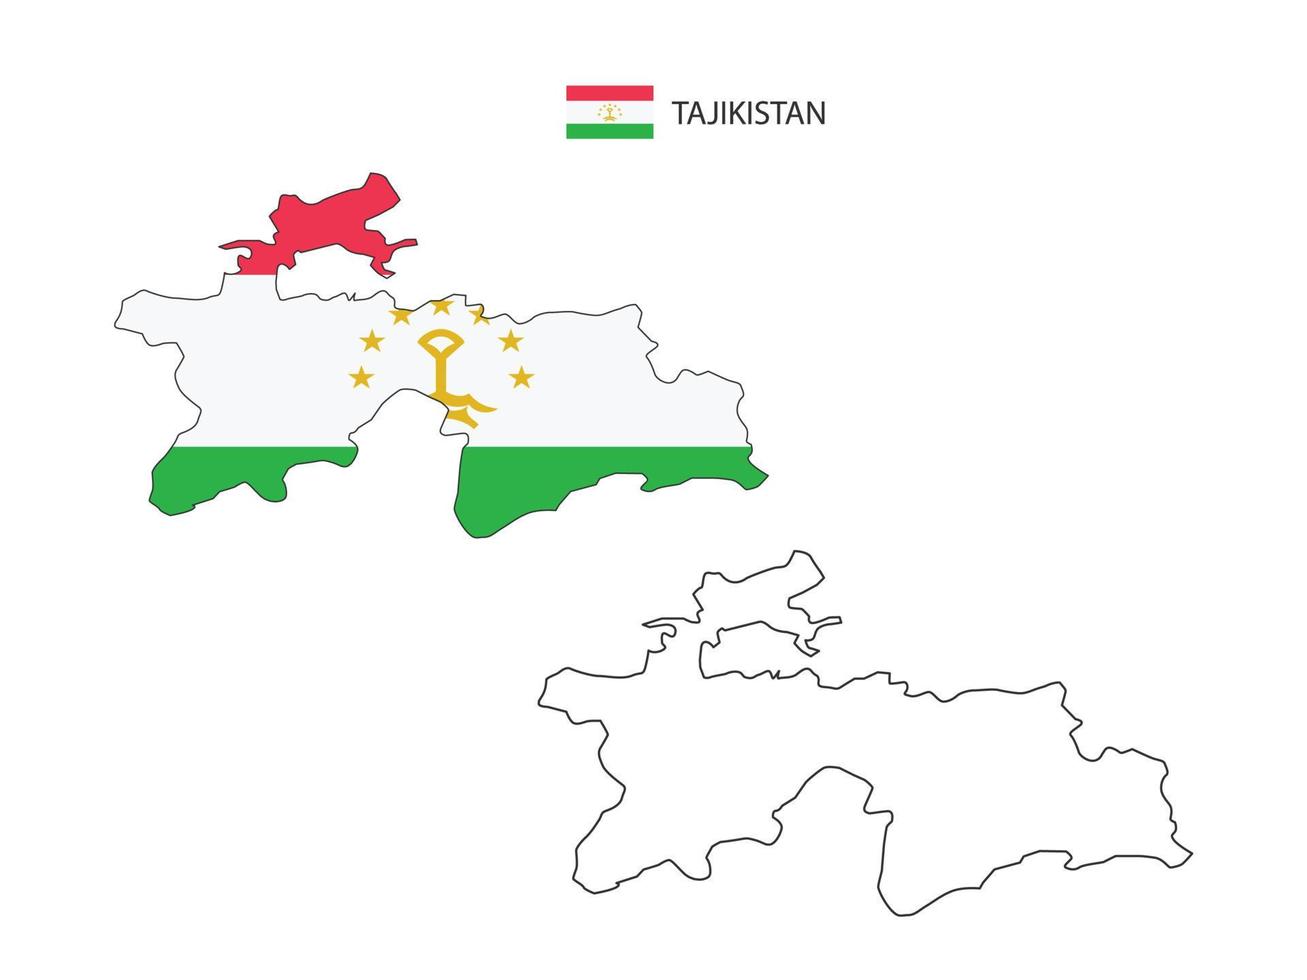 tadjikistan carte ville vecteur divisé par le style de simplicité de contour. ont 2 versions, la version en ligne fine noire et la couleur de la version du drapeau du pays. les deux cartes étaient sur fond blanc.